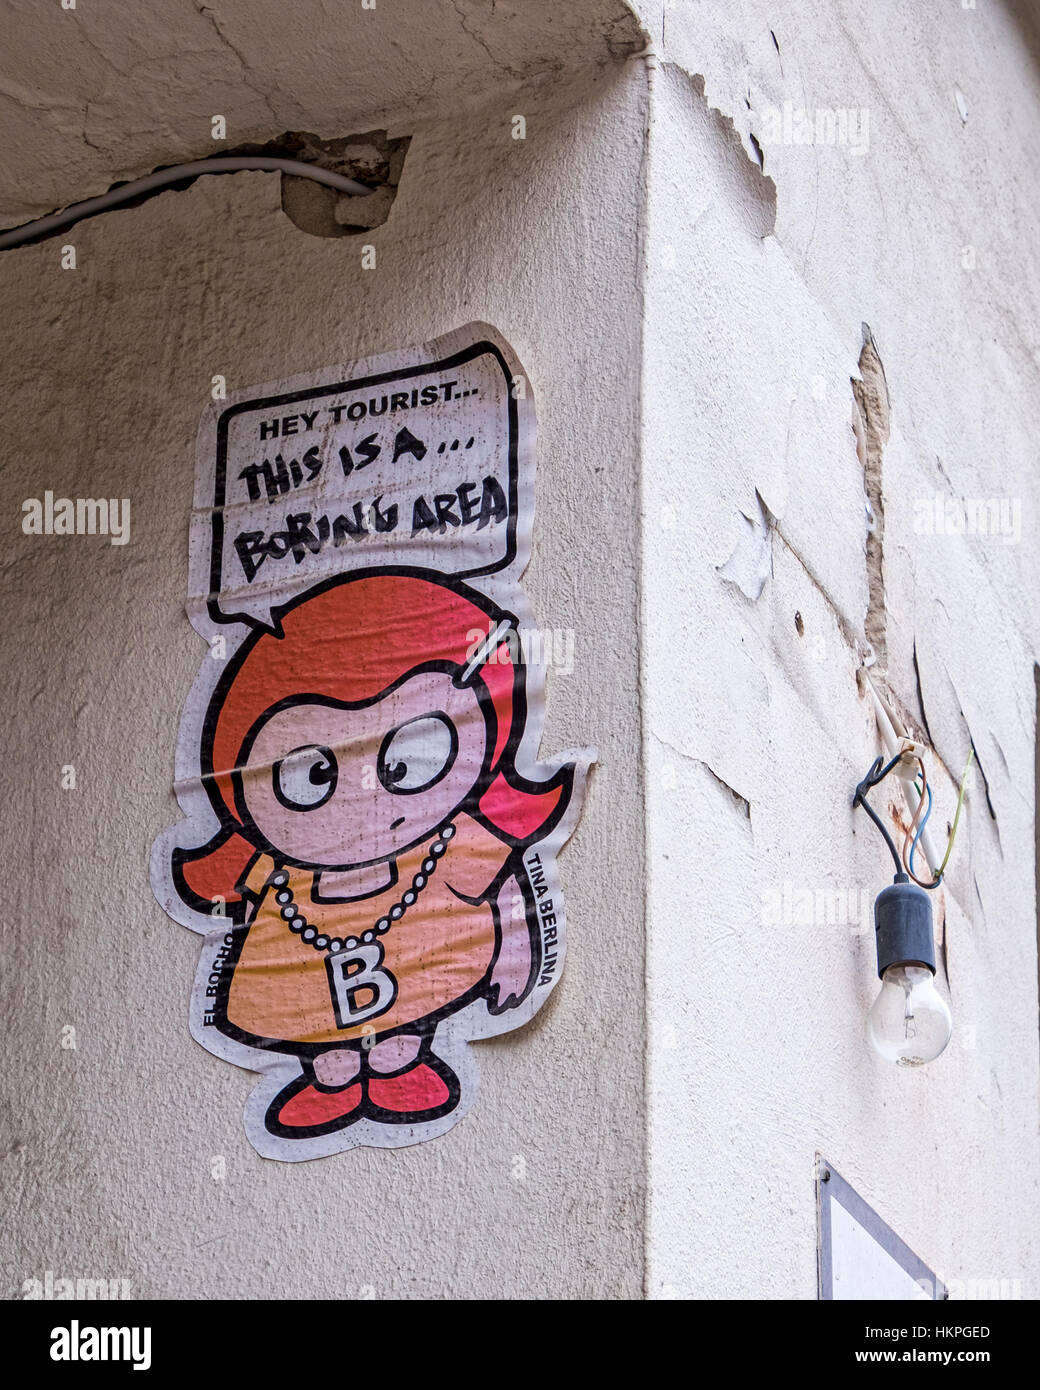 Berlin, Prenzlauer Berg, Streetart Künstlers El Bocho. Kleines Mädchen, Tina Berlina sagen "Hey Tourist Dies ist eine langweilige Gegend" Stockfoto